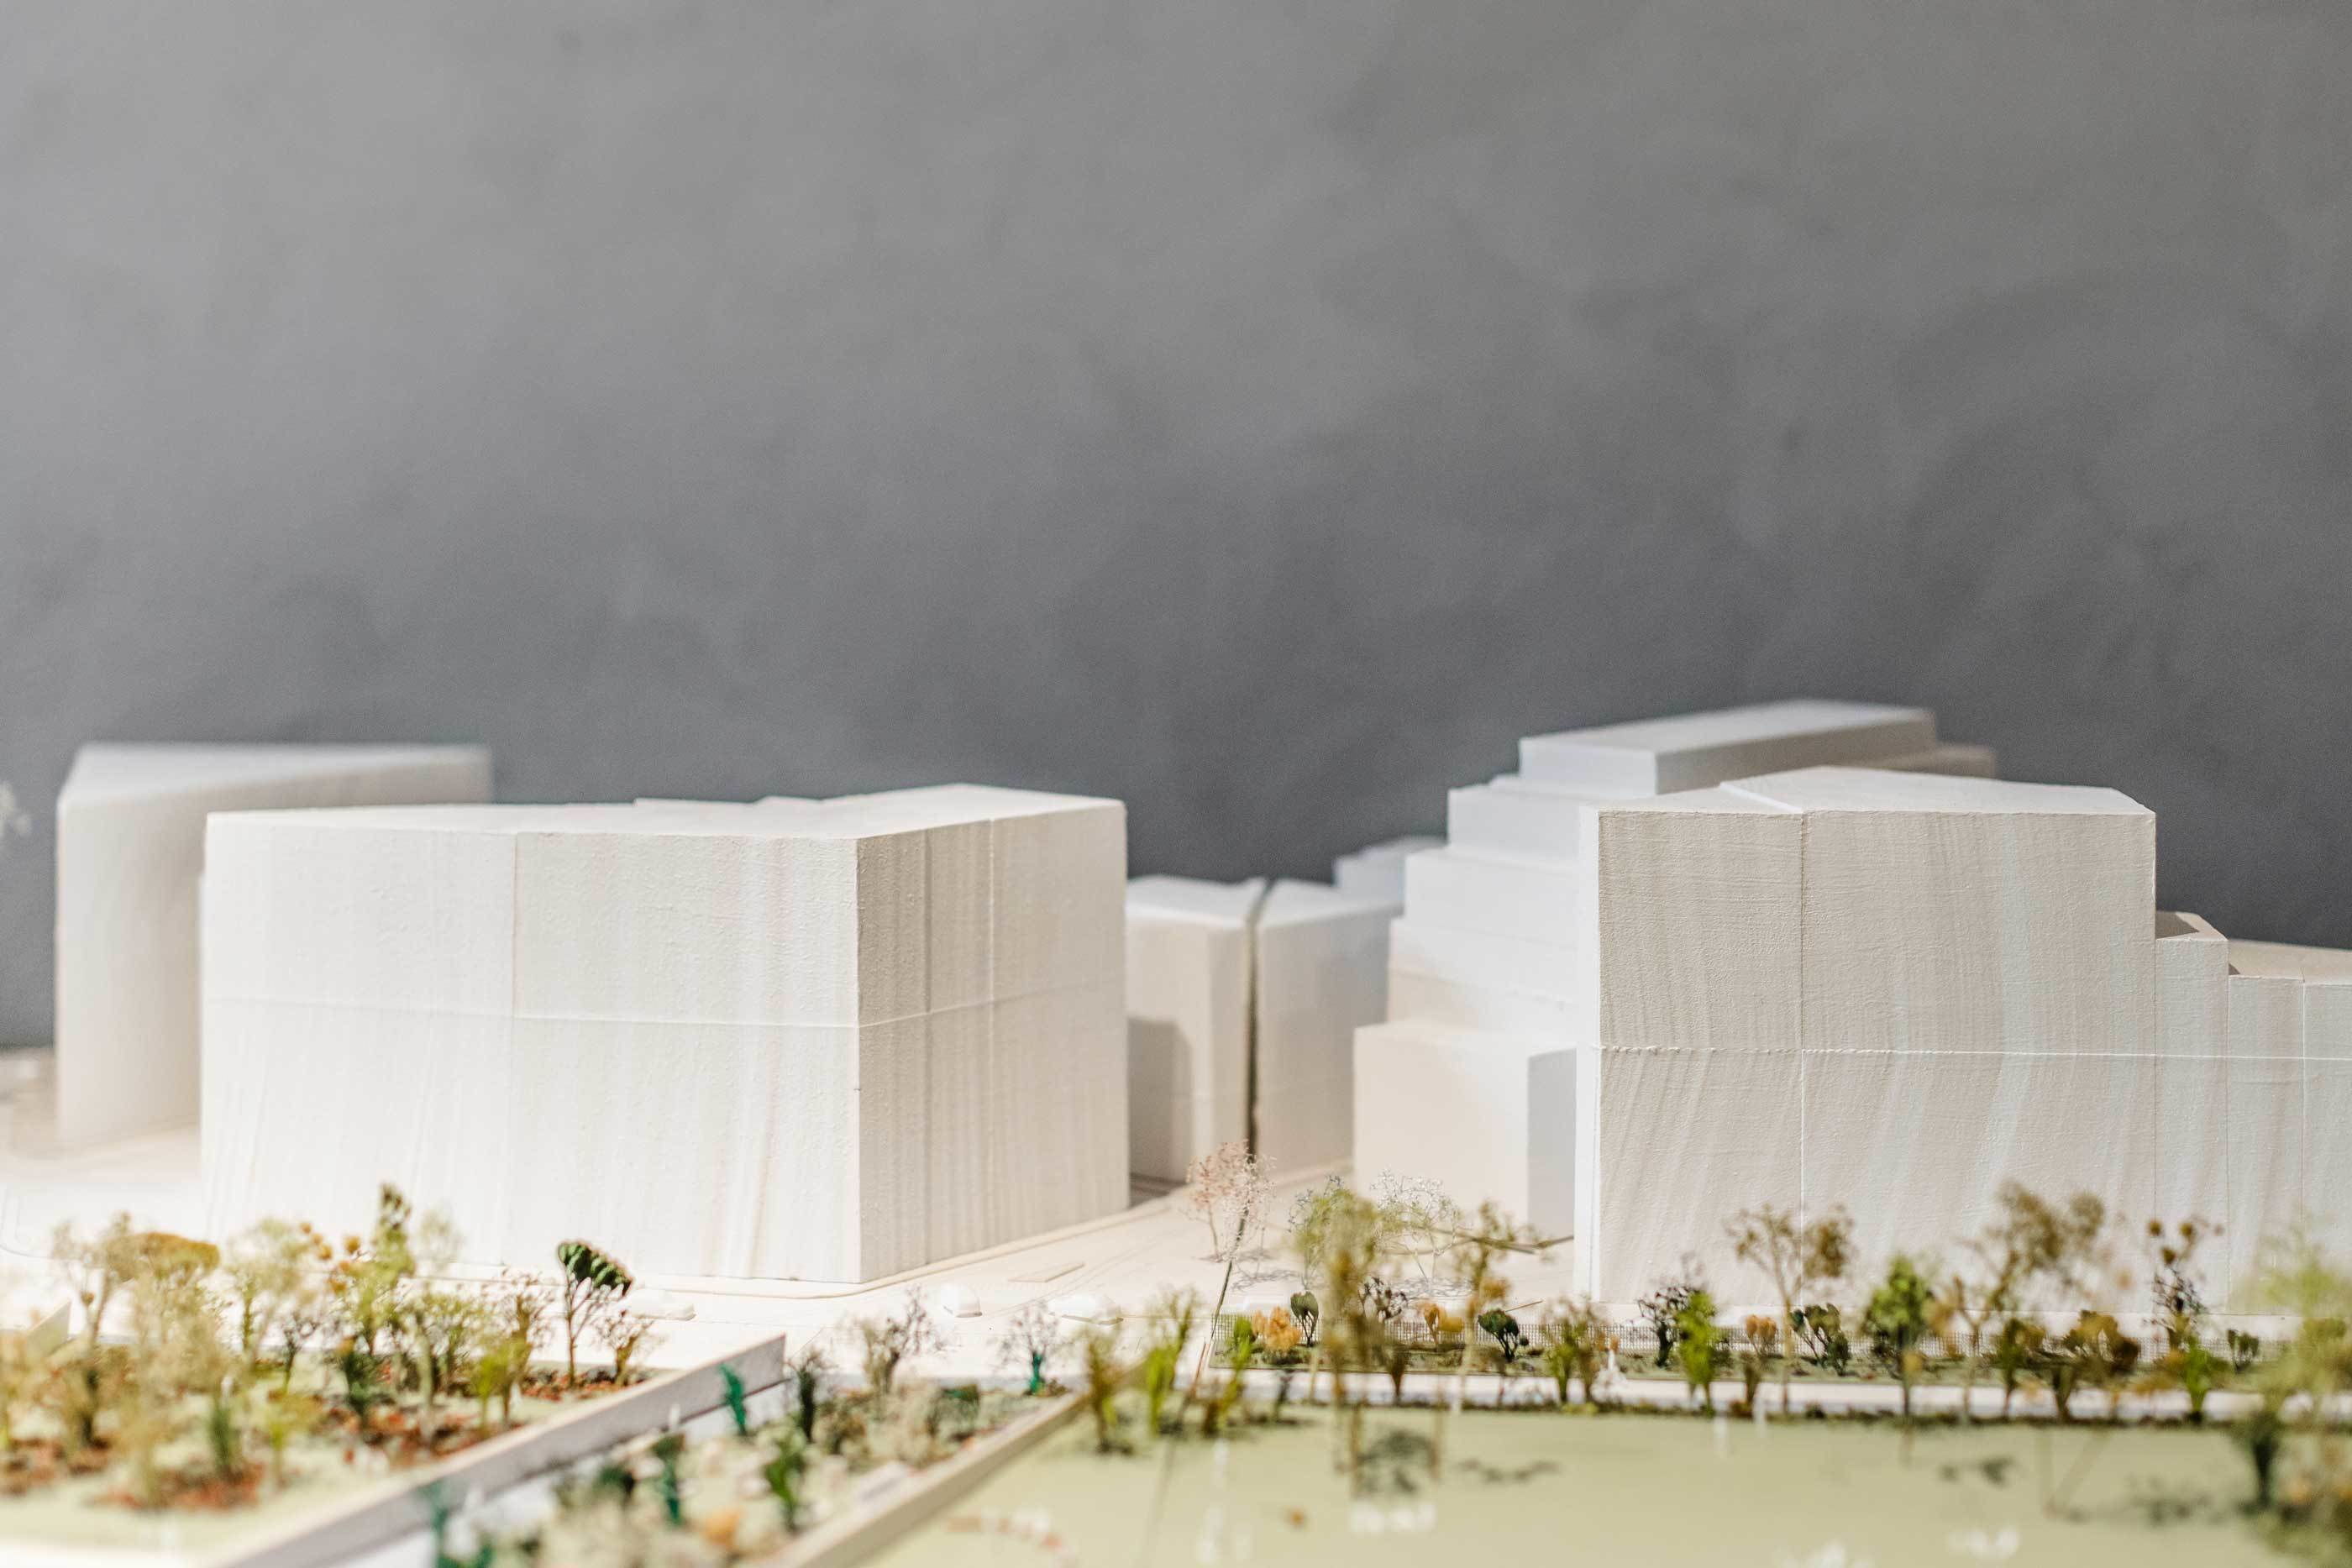 Maquettes tonen toekomstmogelijkheden voor de ontwikkeling van Antwerpen.